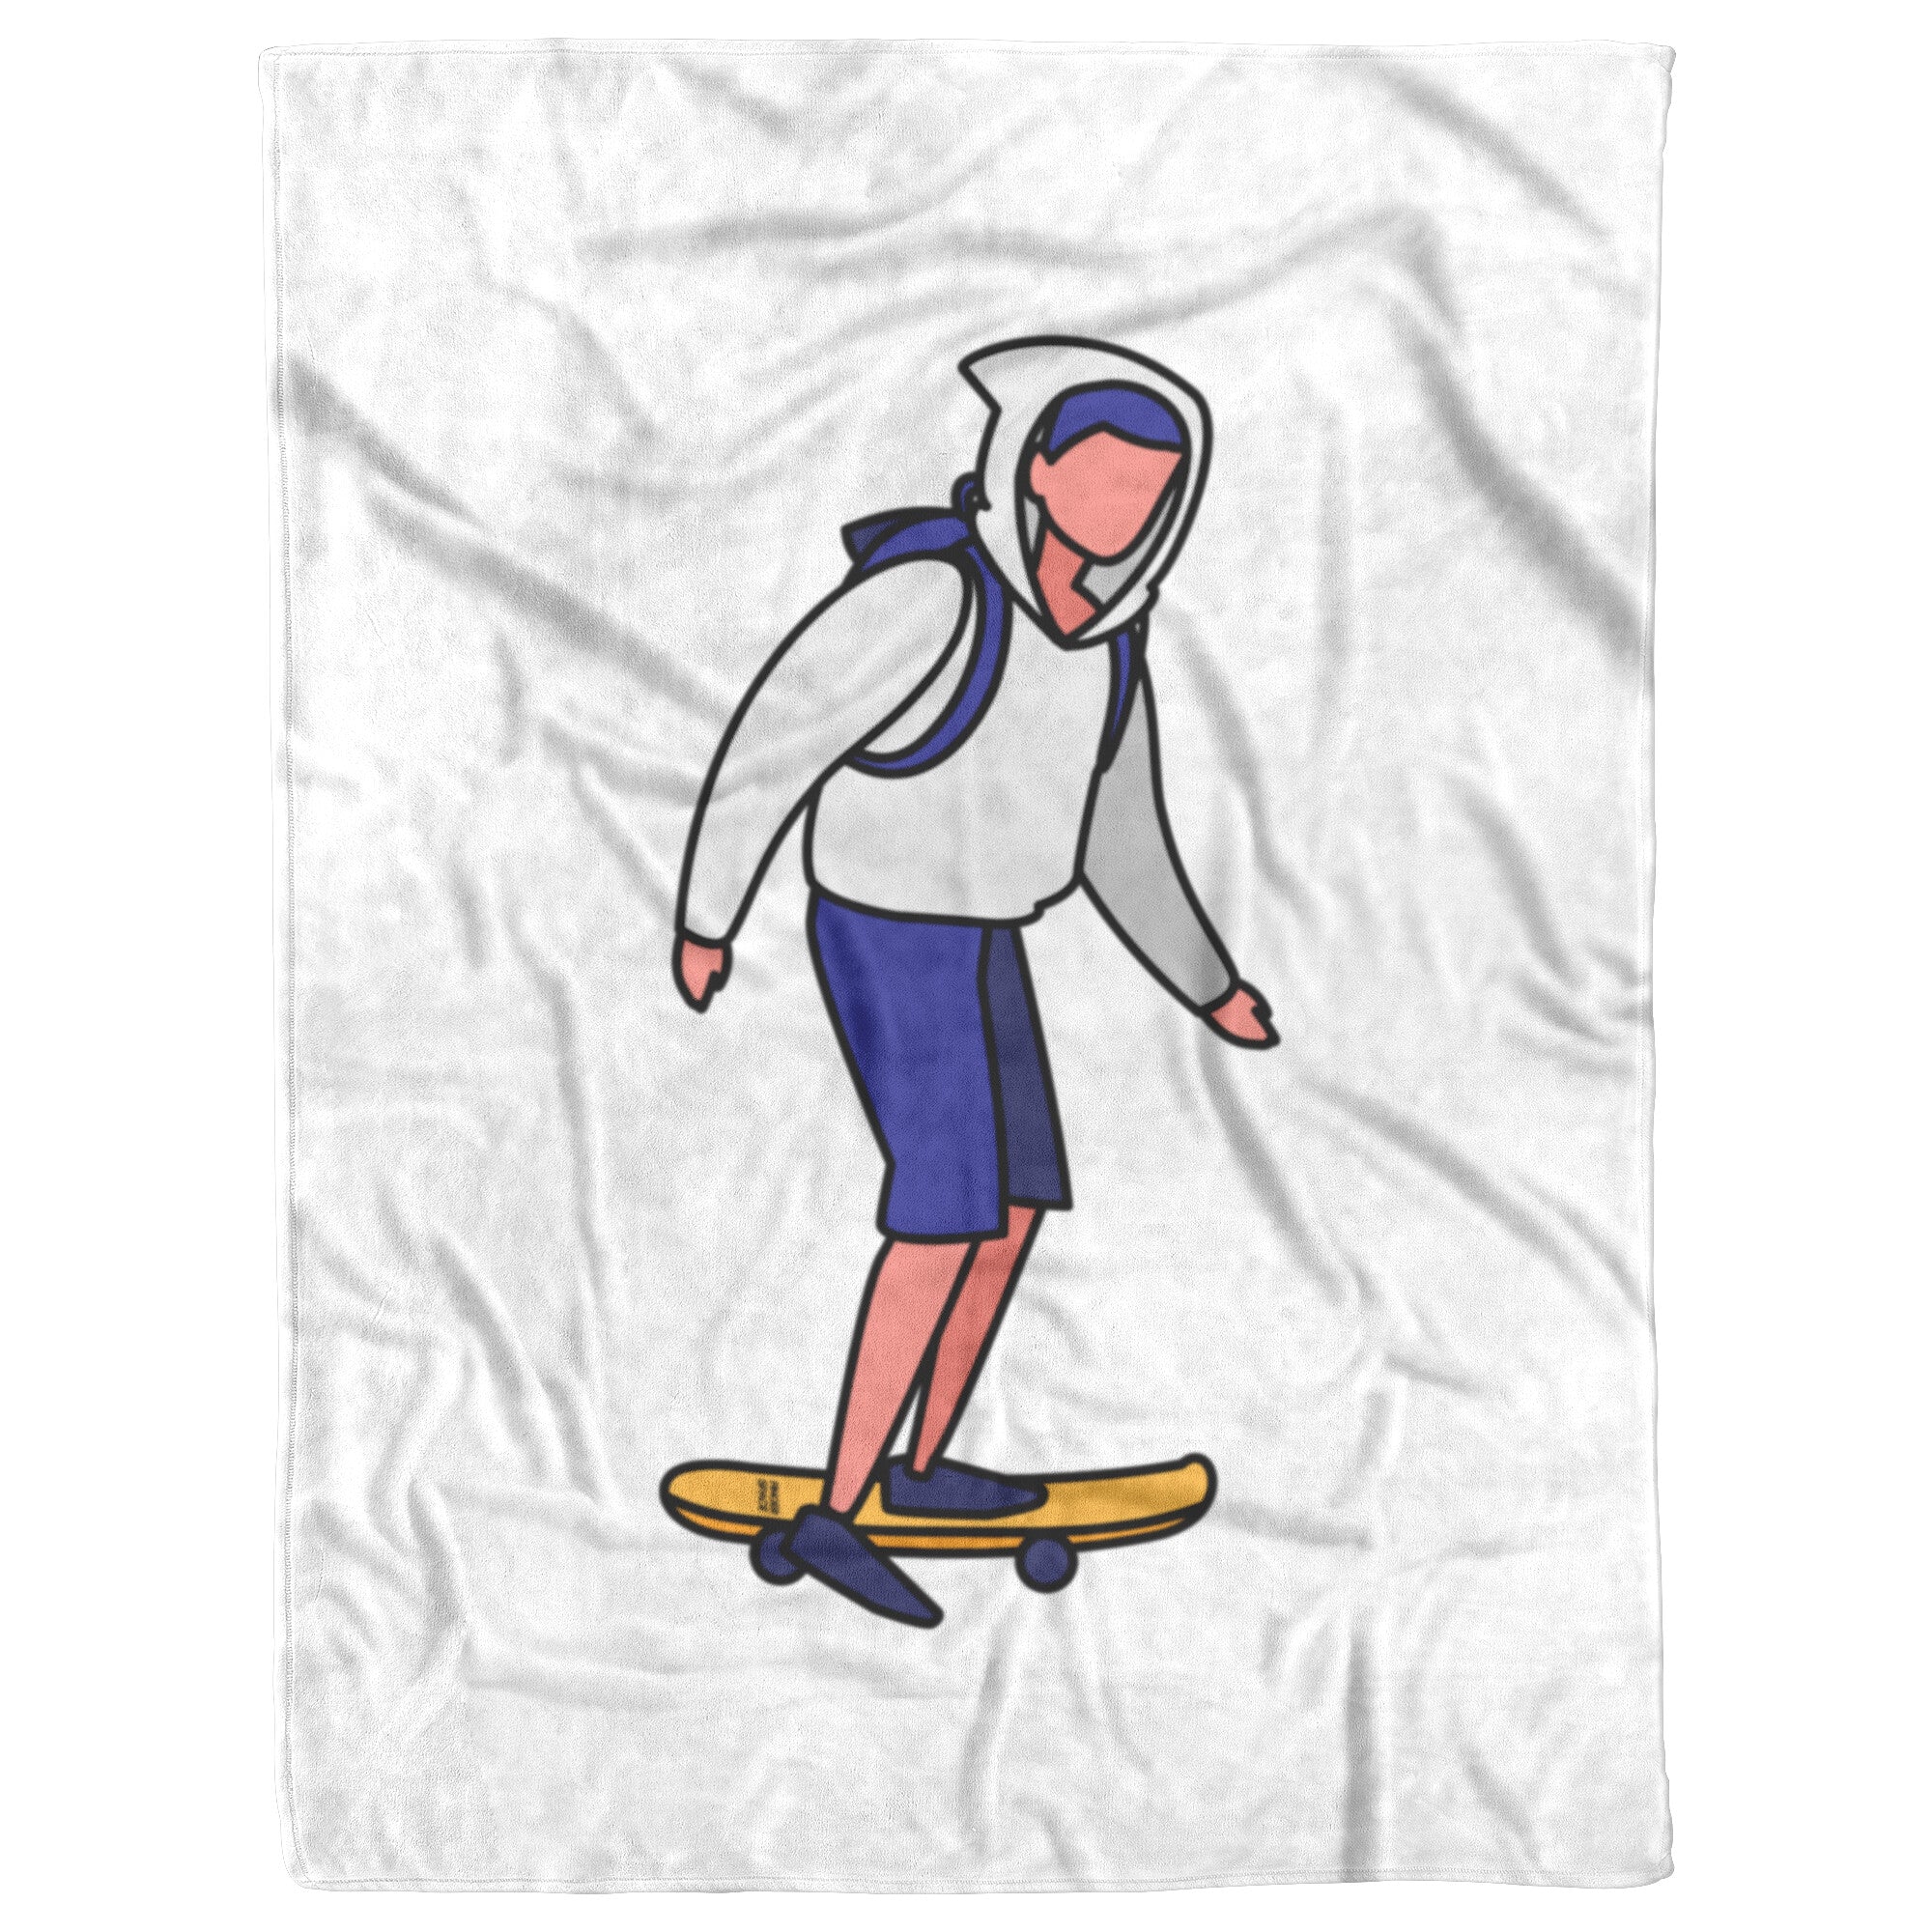 Skater Boy Premium Fleece Blanket by Finger Space